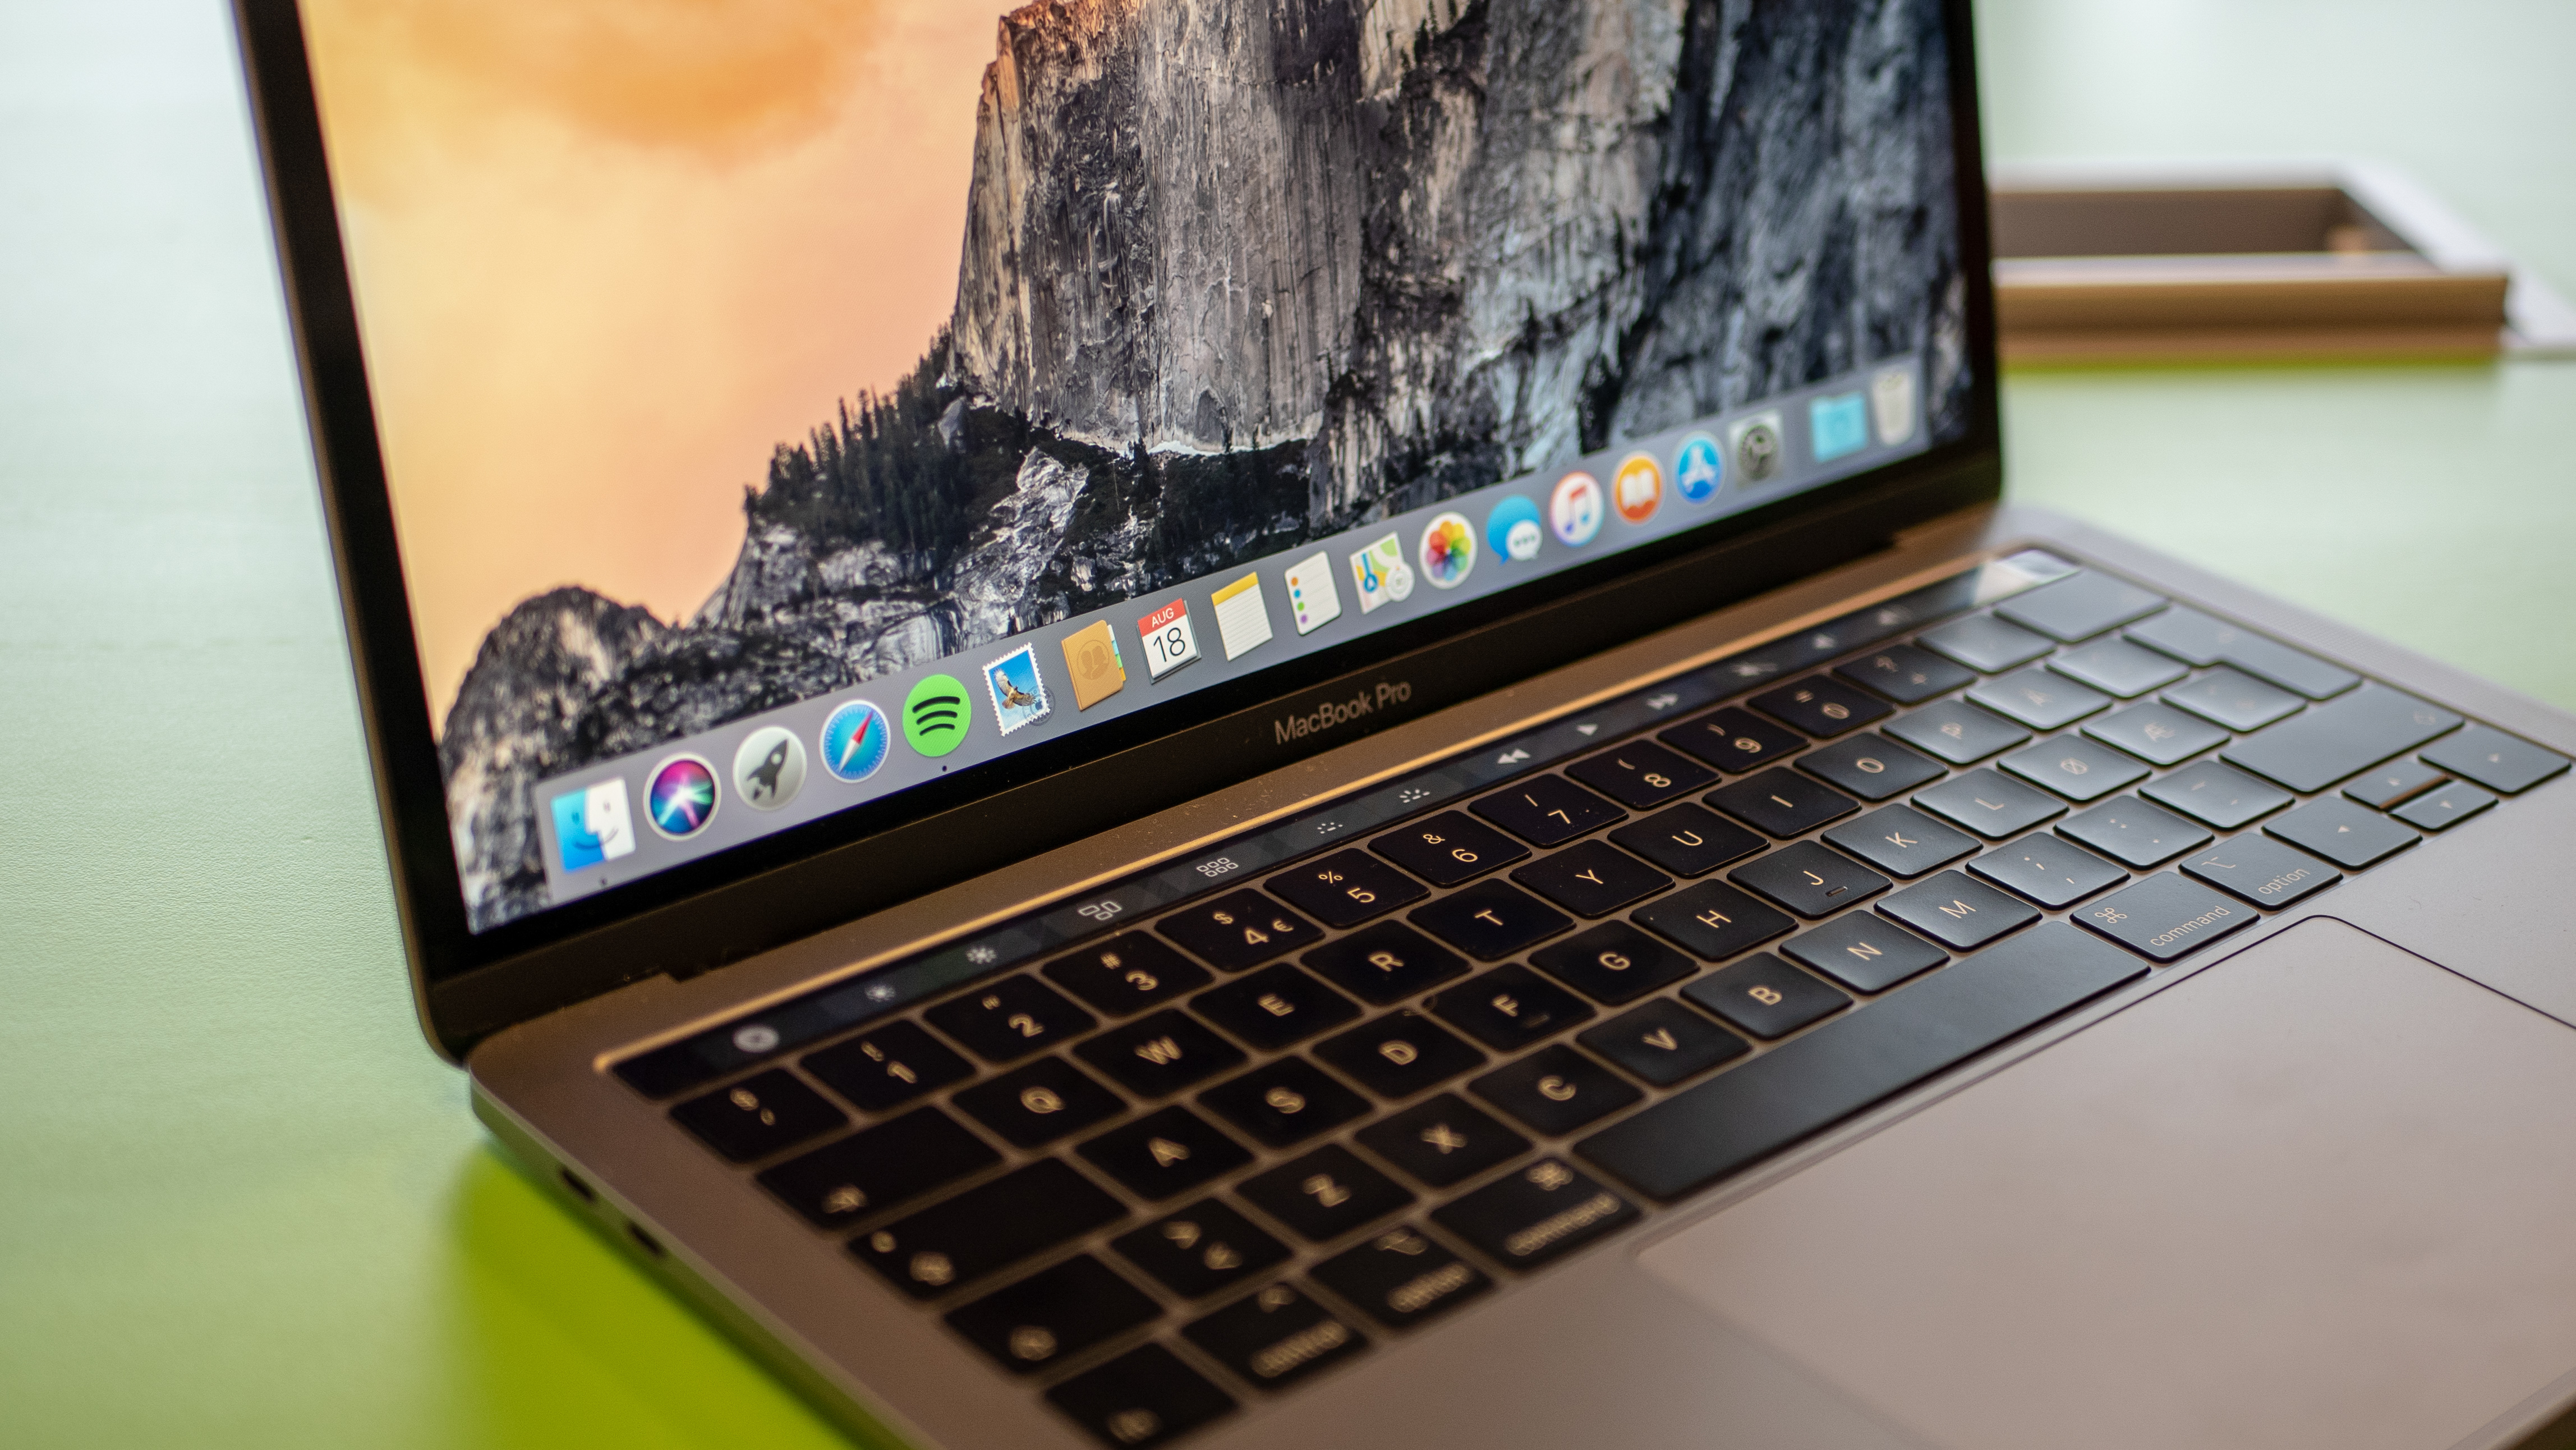 MacBook Pro 13 er en av de beste PC-ene vi har testet i år.